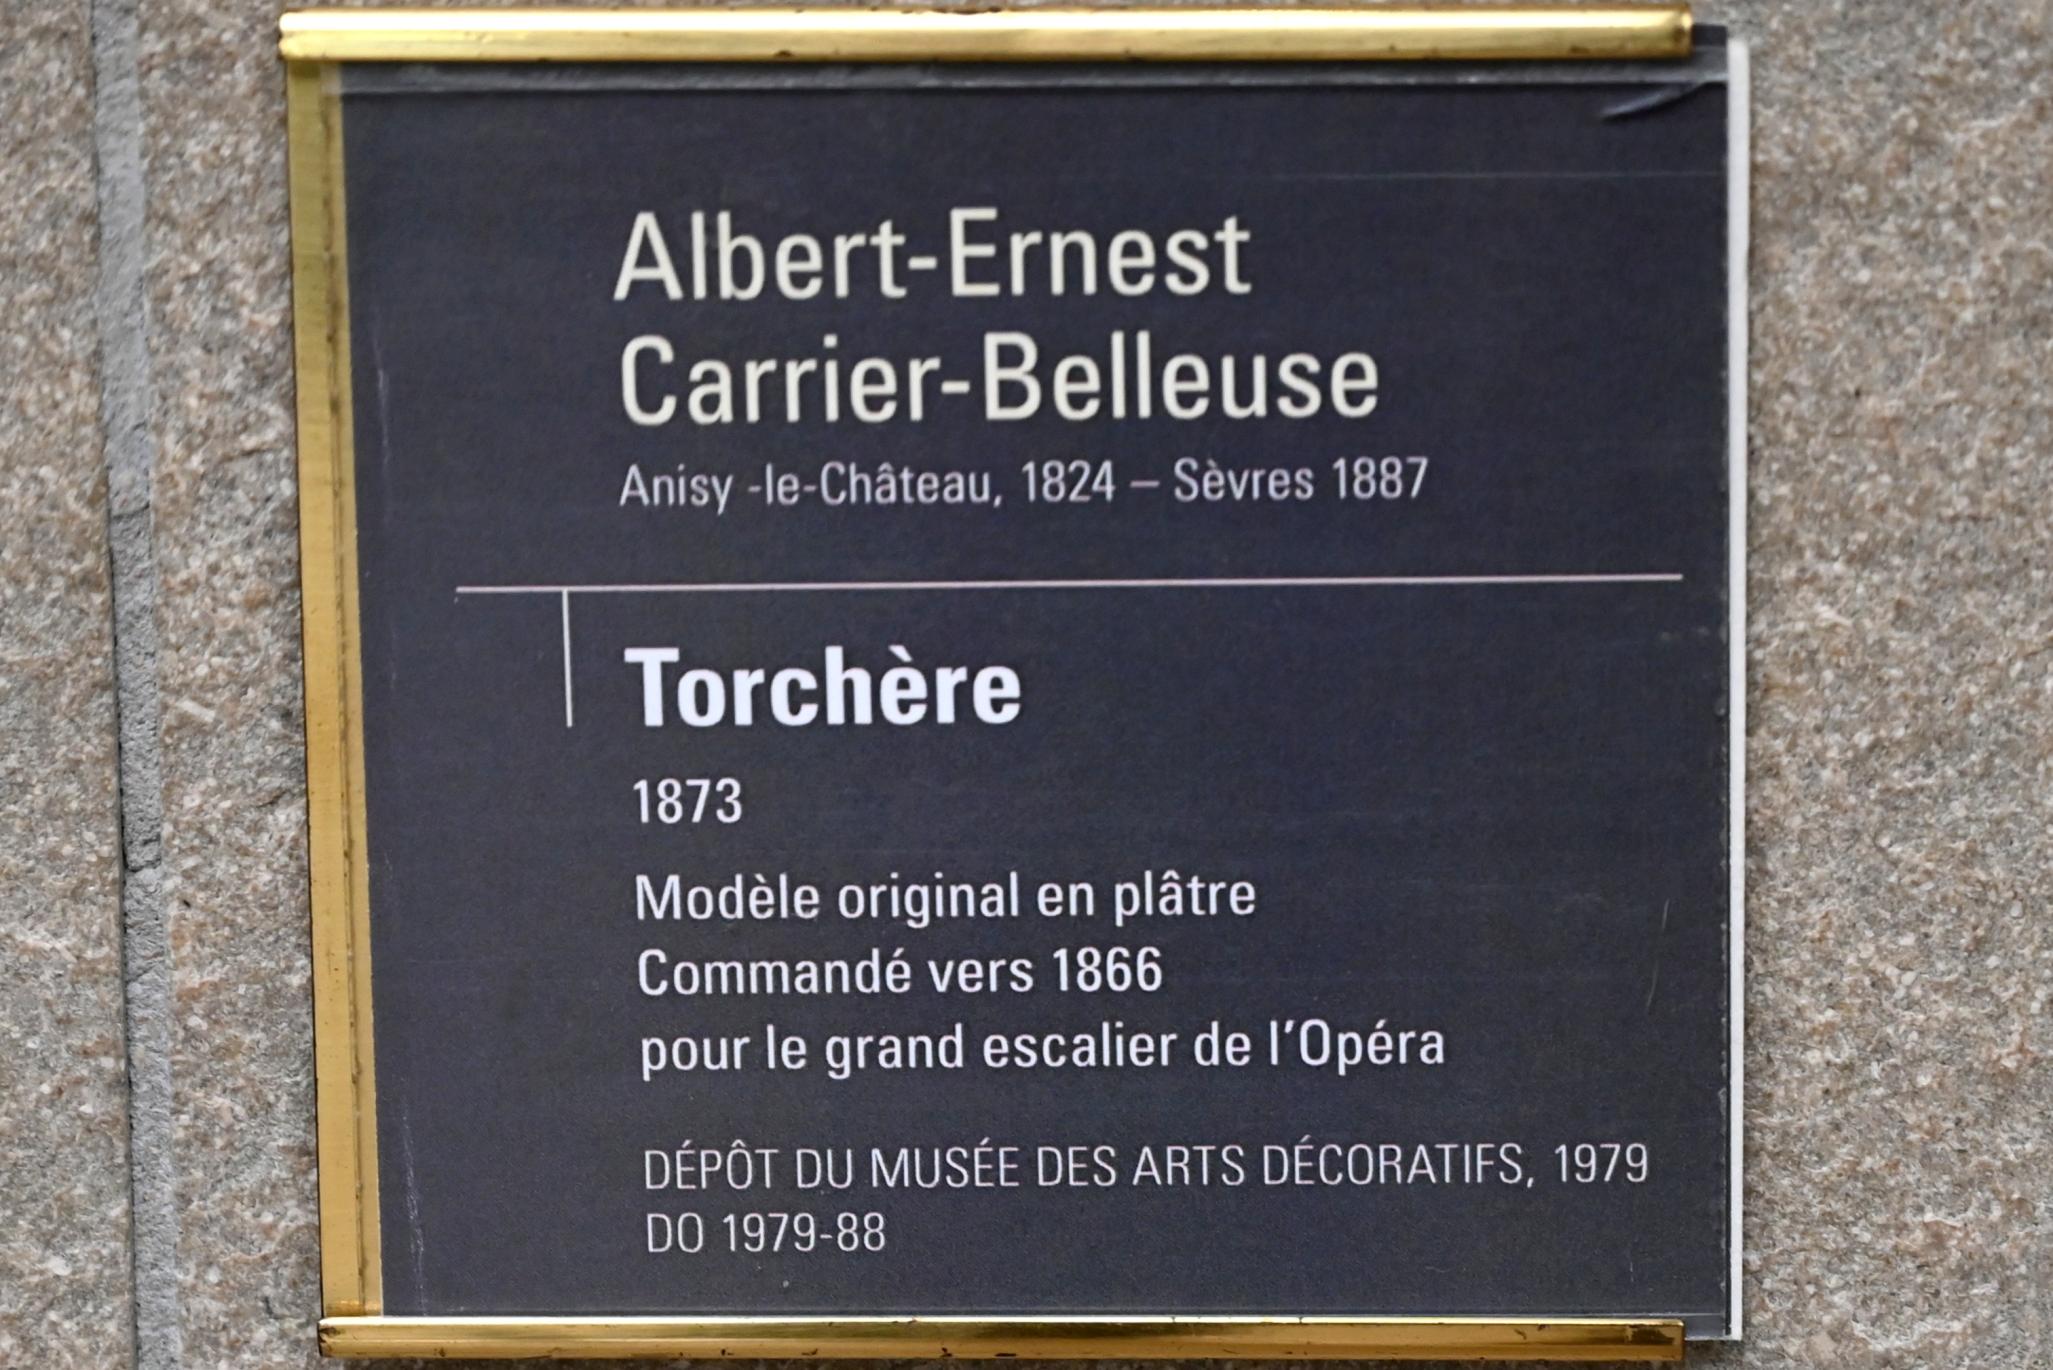 Albert-Ernest Carrier-Belleuse (1863–1875), Torchère, Paris, Opéra Garnier, jetzt Paris, Musée d’Orsay, 1873, Bild 3/3